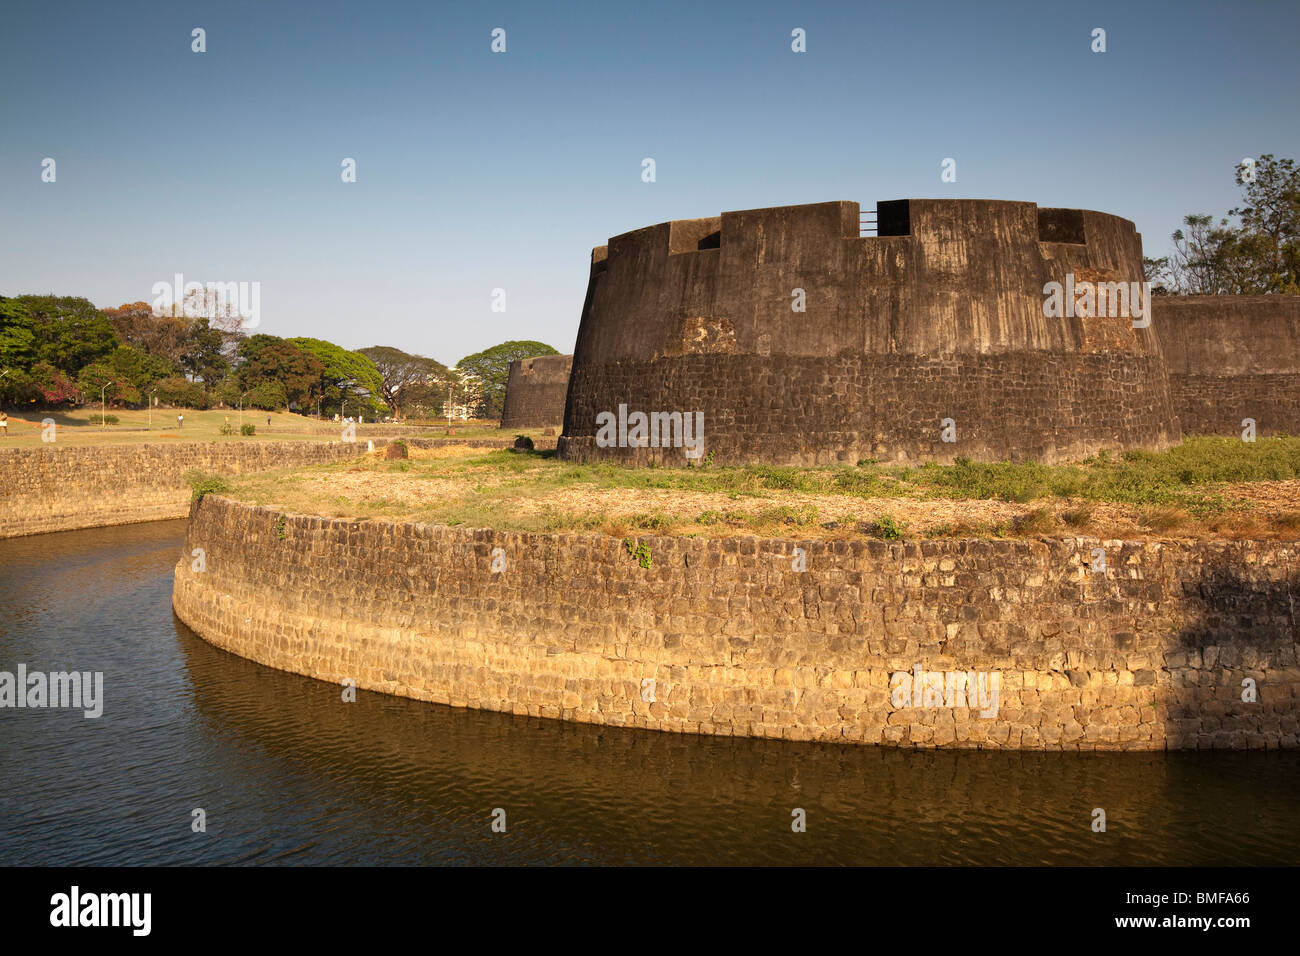 L'Inde, le Kerala, Palakkad, fort de Tipu Sultan, bult par Haider Ali en 1766, dans l'ouest de bastions et douves Banque D'Images